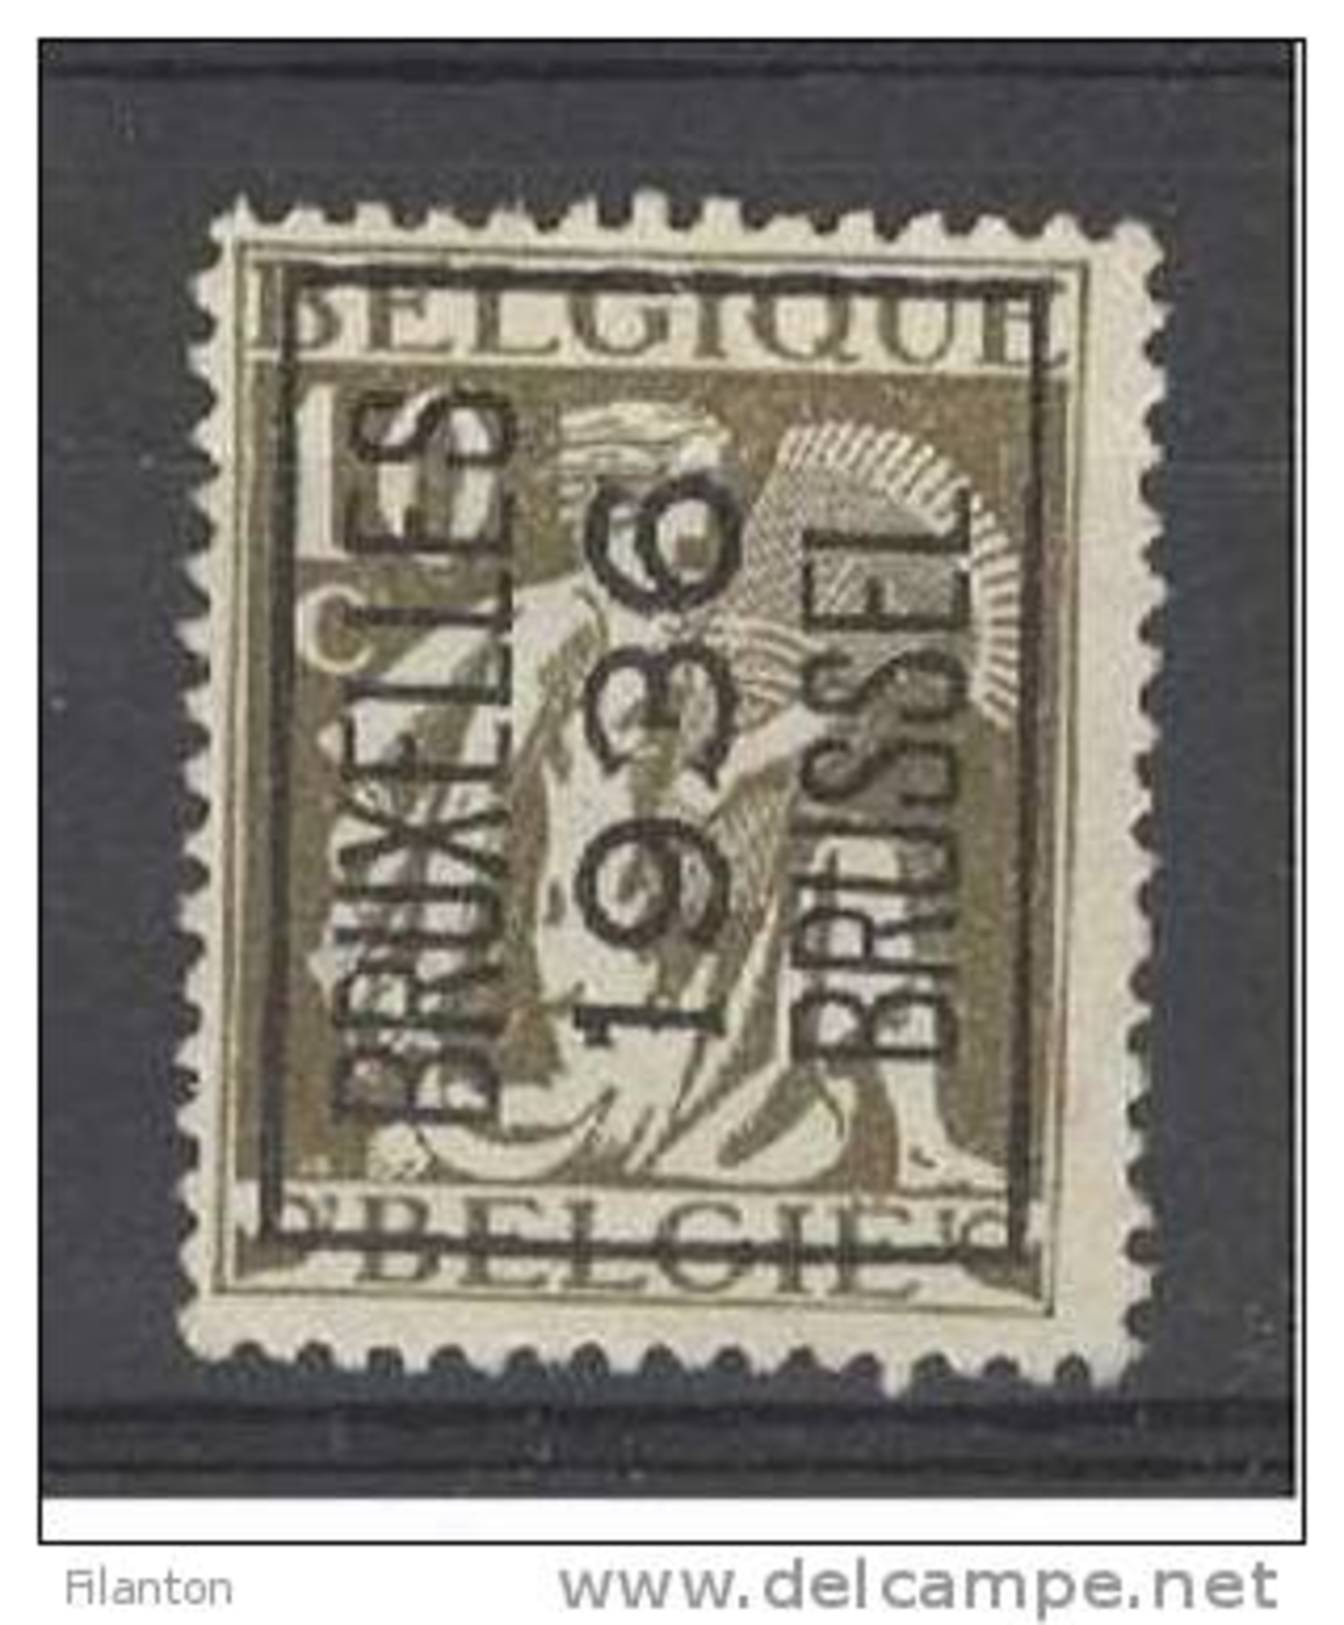 BELGIE - OBP Nr PRE 306 A  - "BRUSSEL 1936" - Typo - Ceres - Préo/Precancels - (*) - Sobreimpresos 1932-36 (Ceres Y Mercurio)